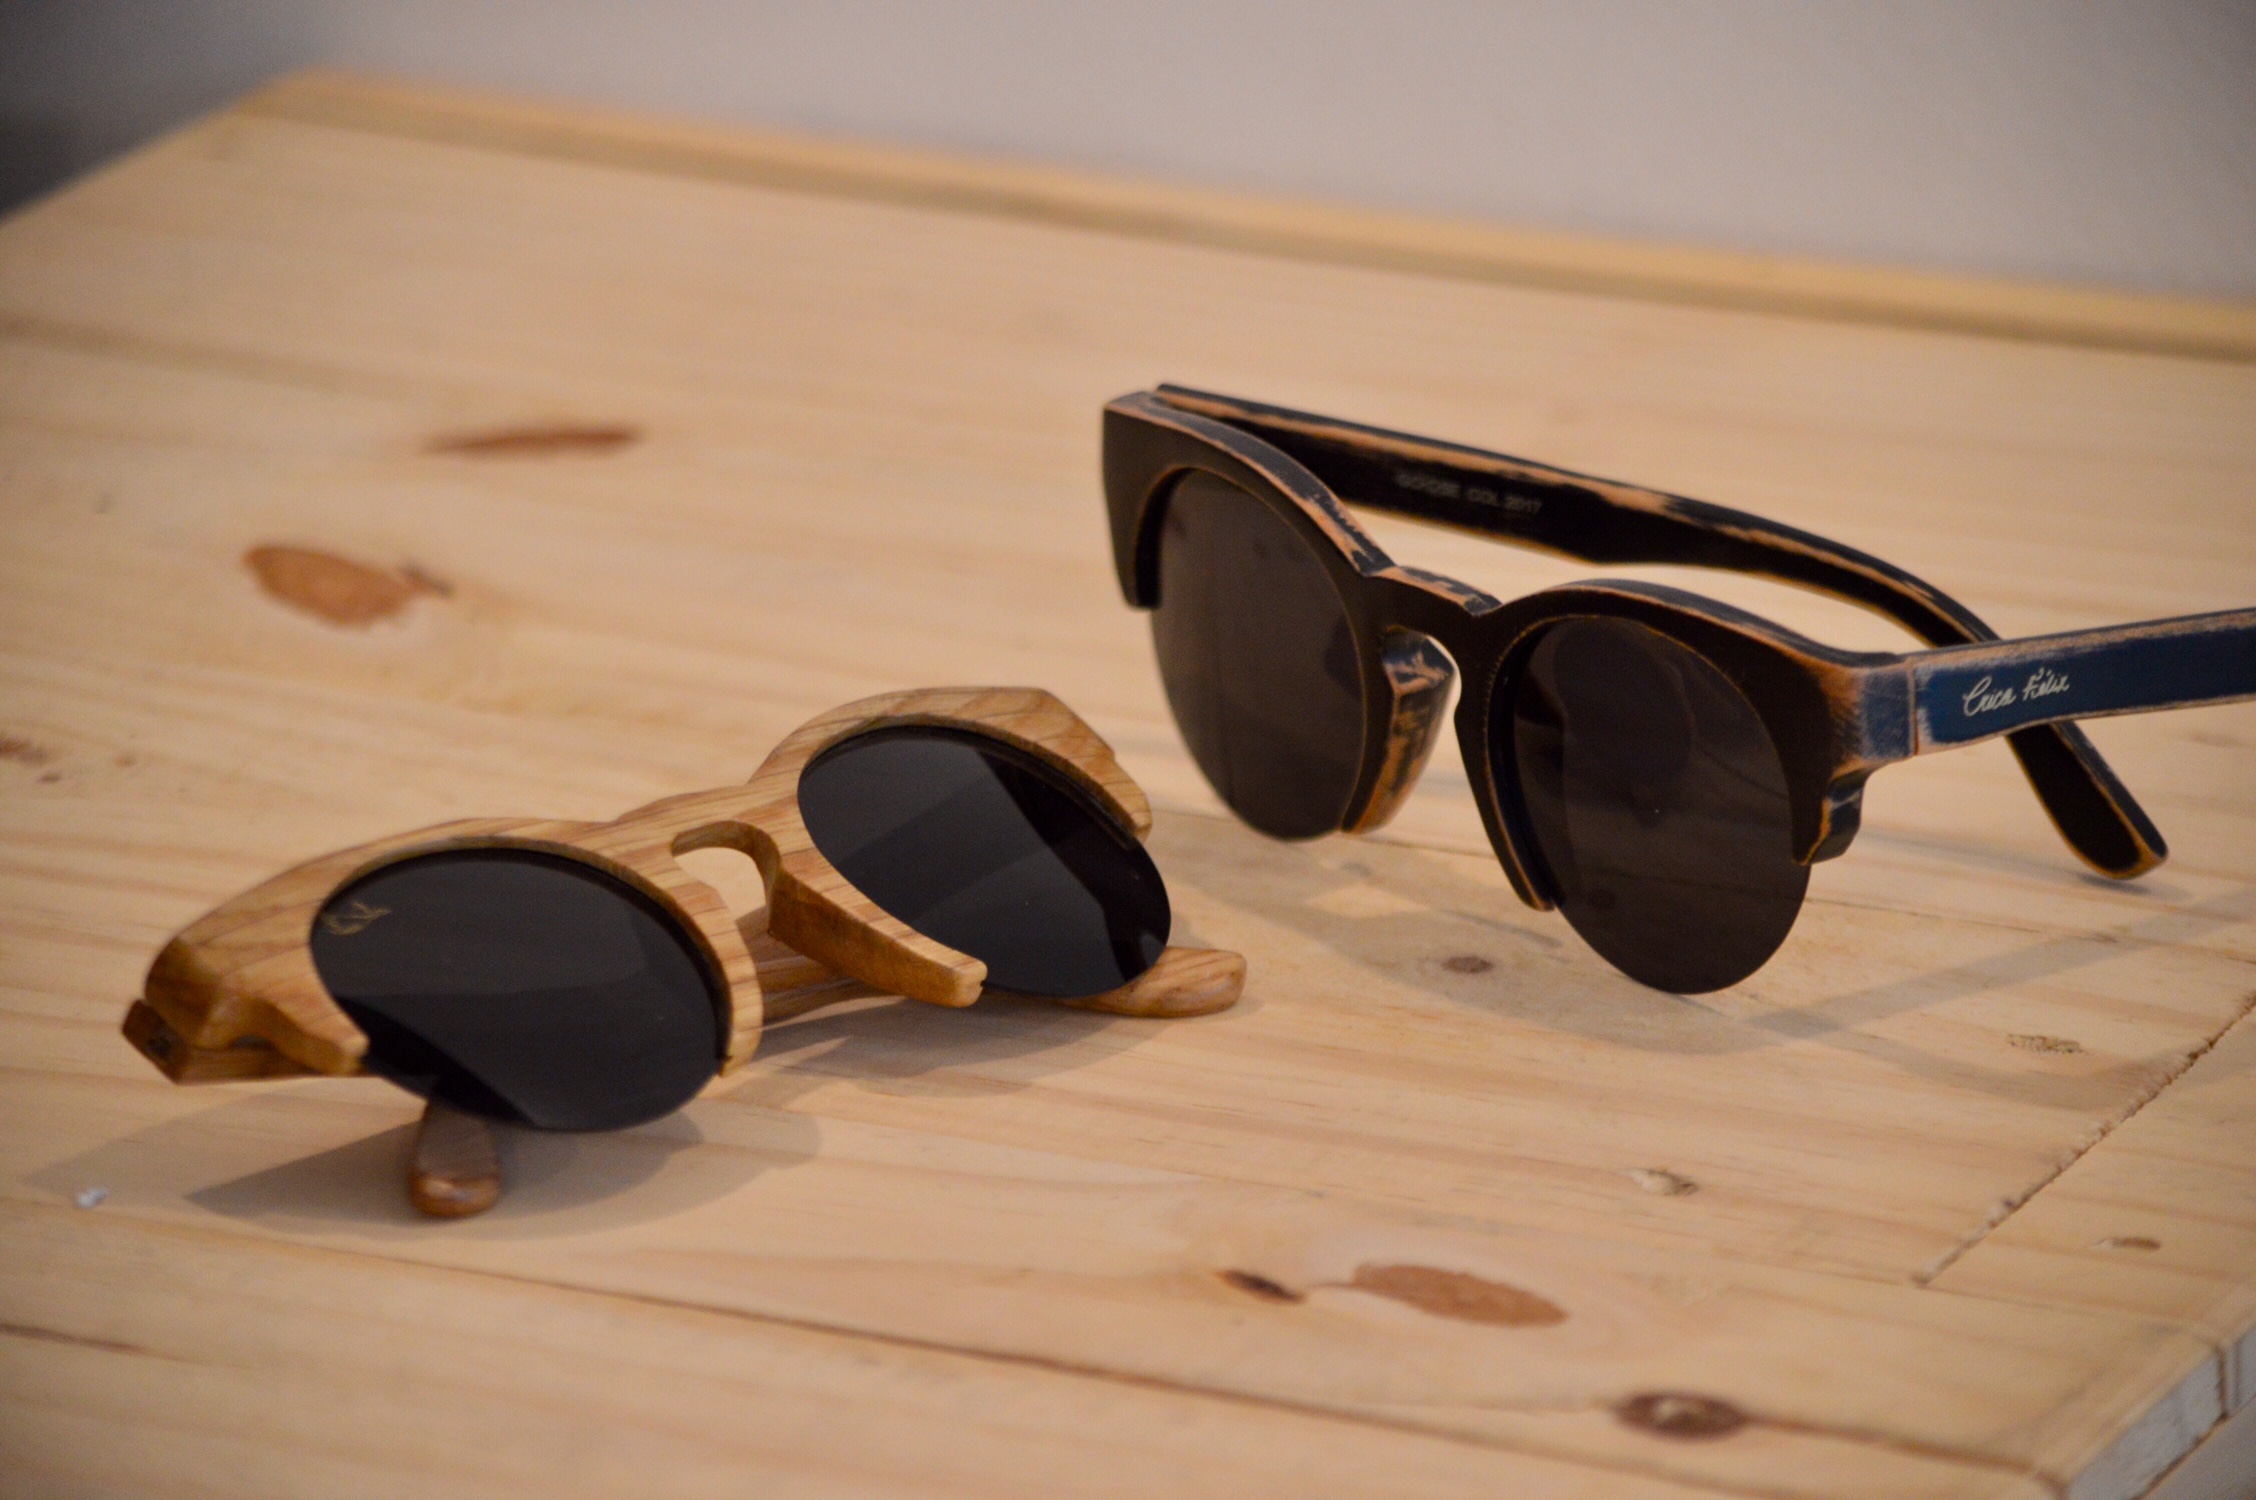 Óculos da coleção verão 2017 confeccionados com bambu